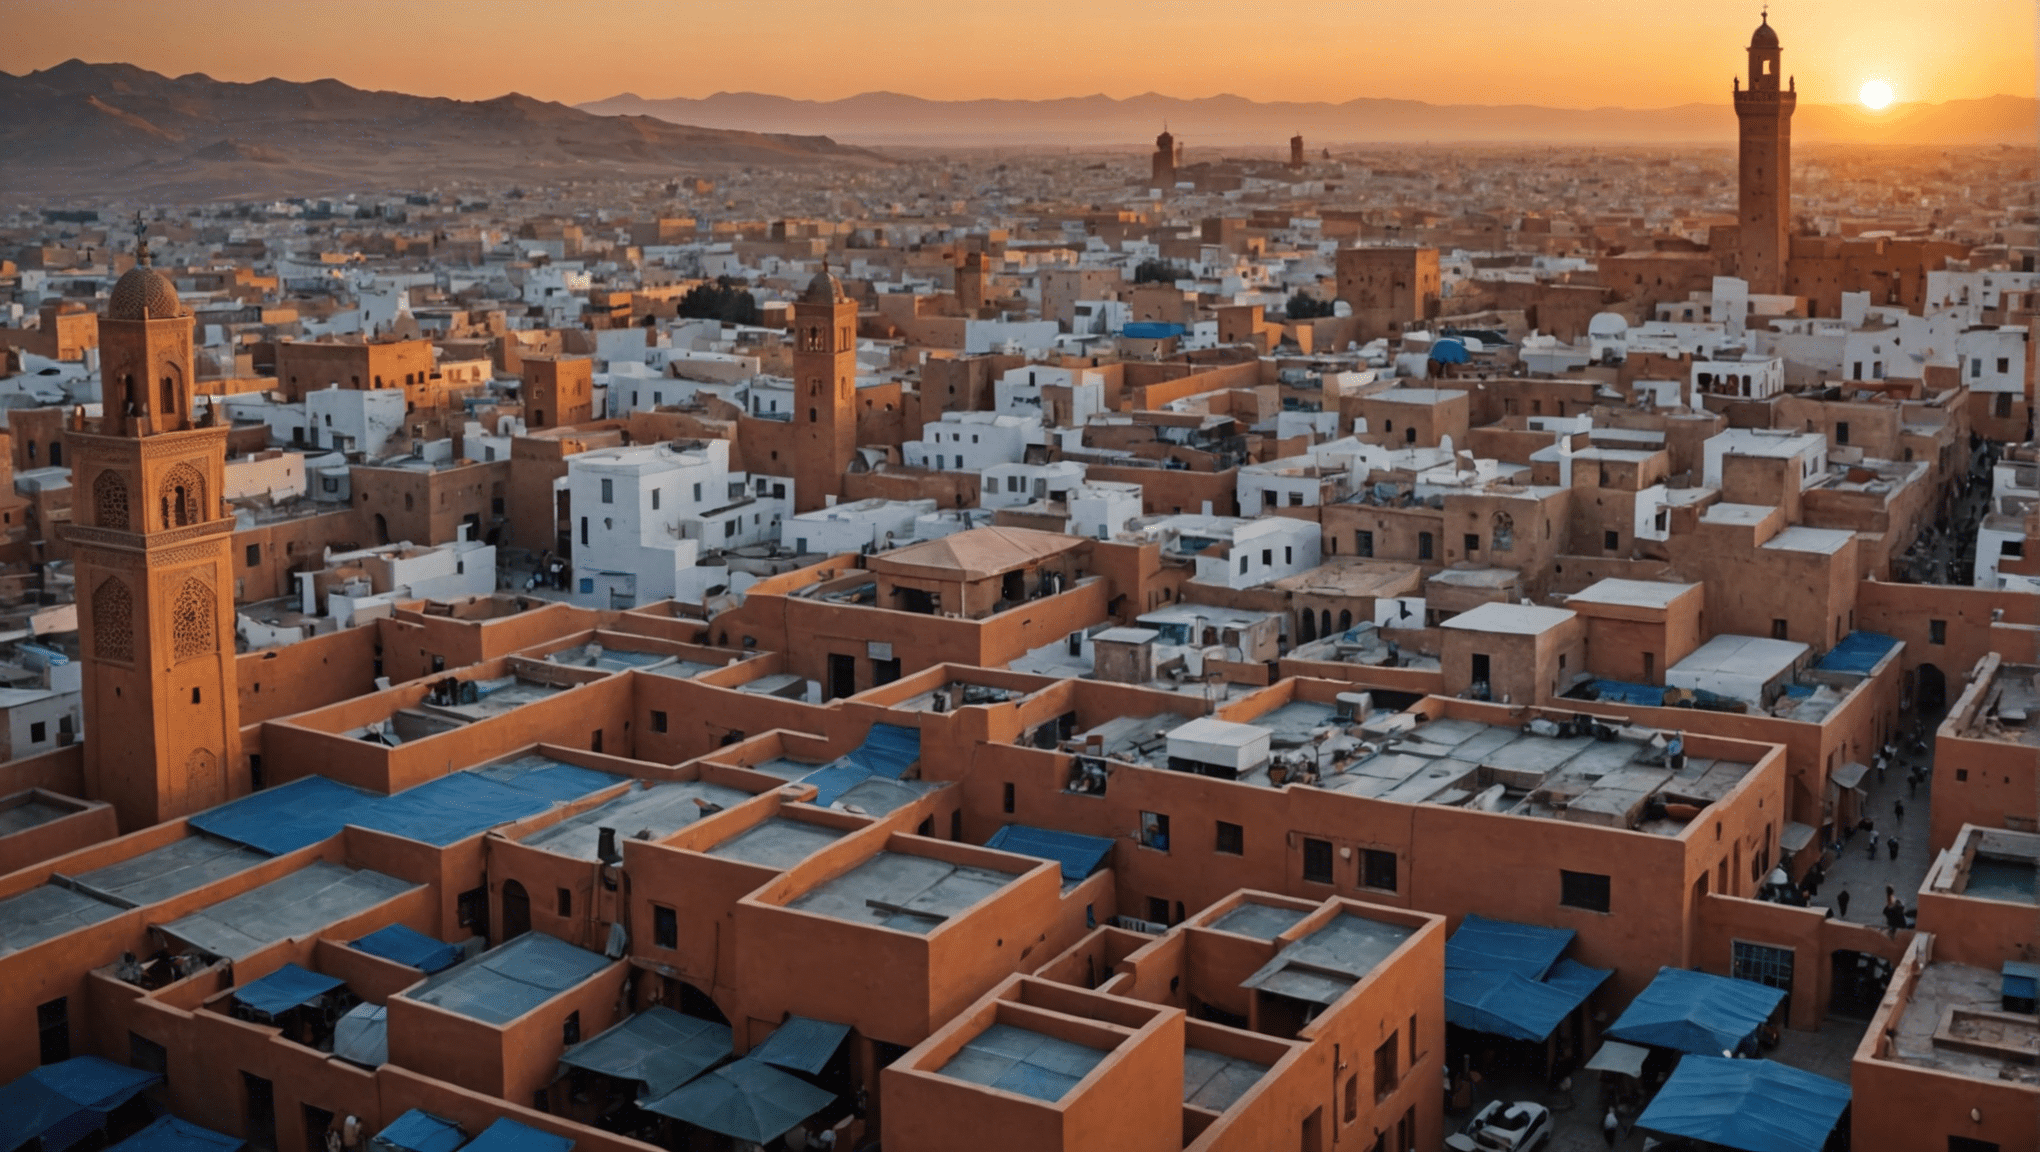 découvrez l'attrait de l'industrie cinématographique marocaine et l'attrait de devenir figurant dans le cinéma dans cette destination captivante.